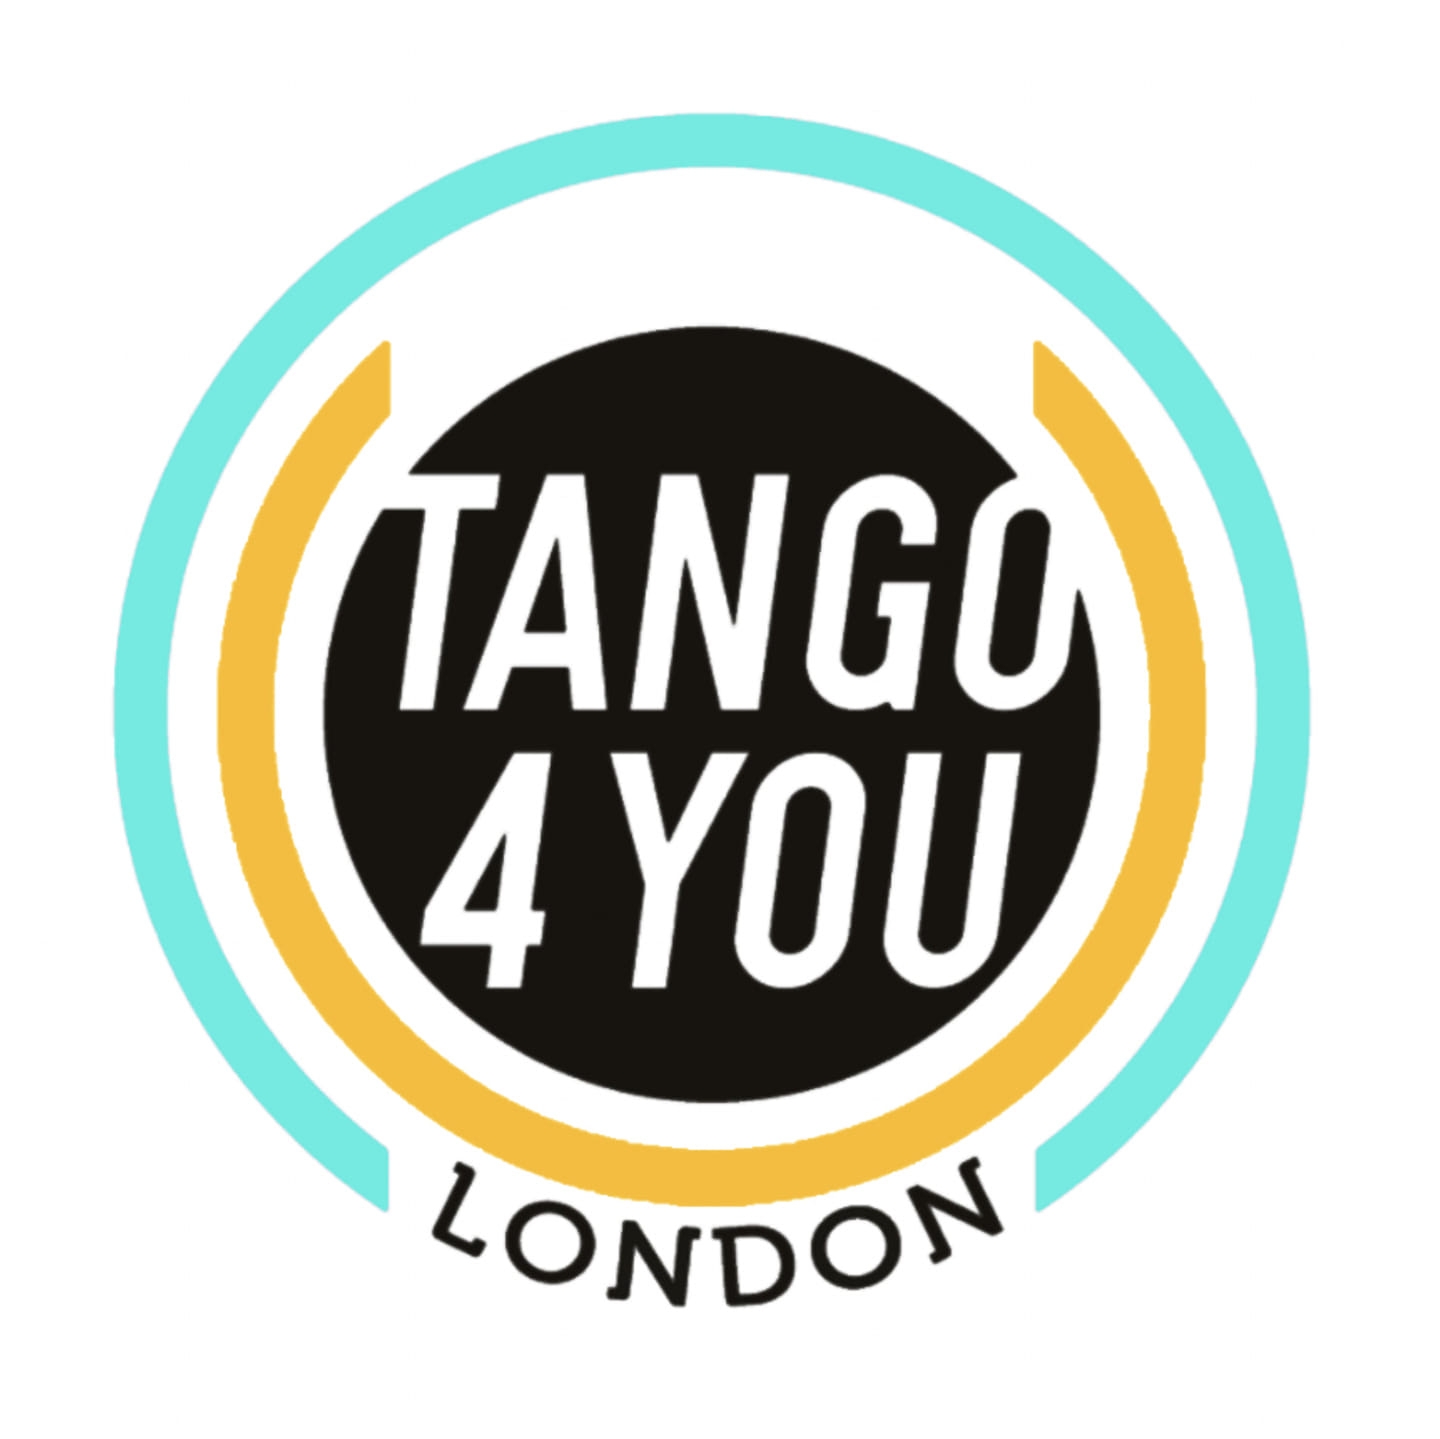 Tango 4 You